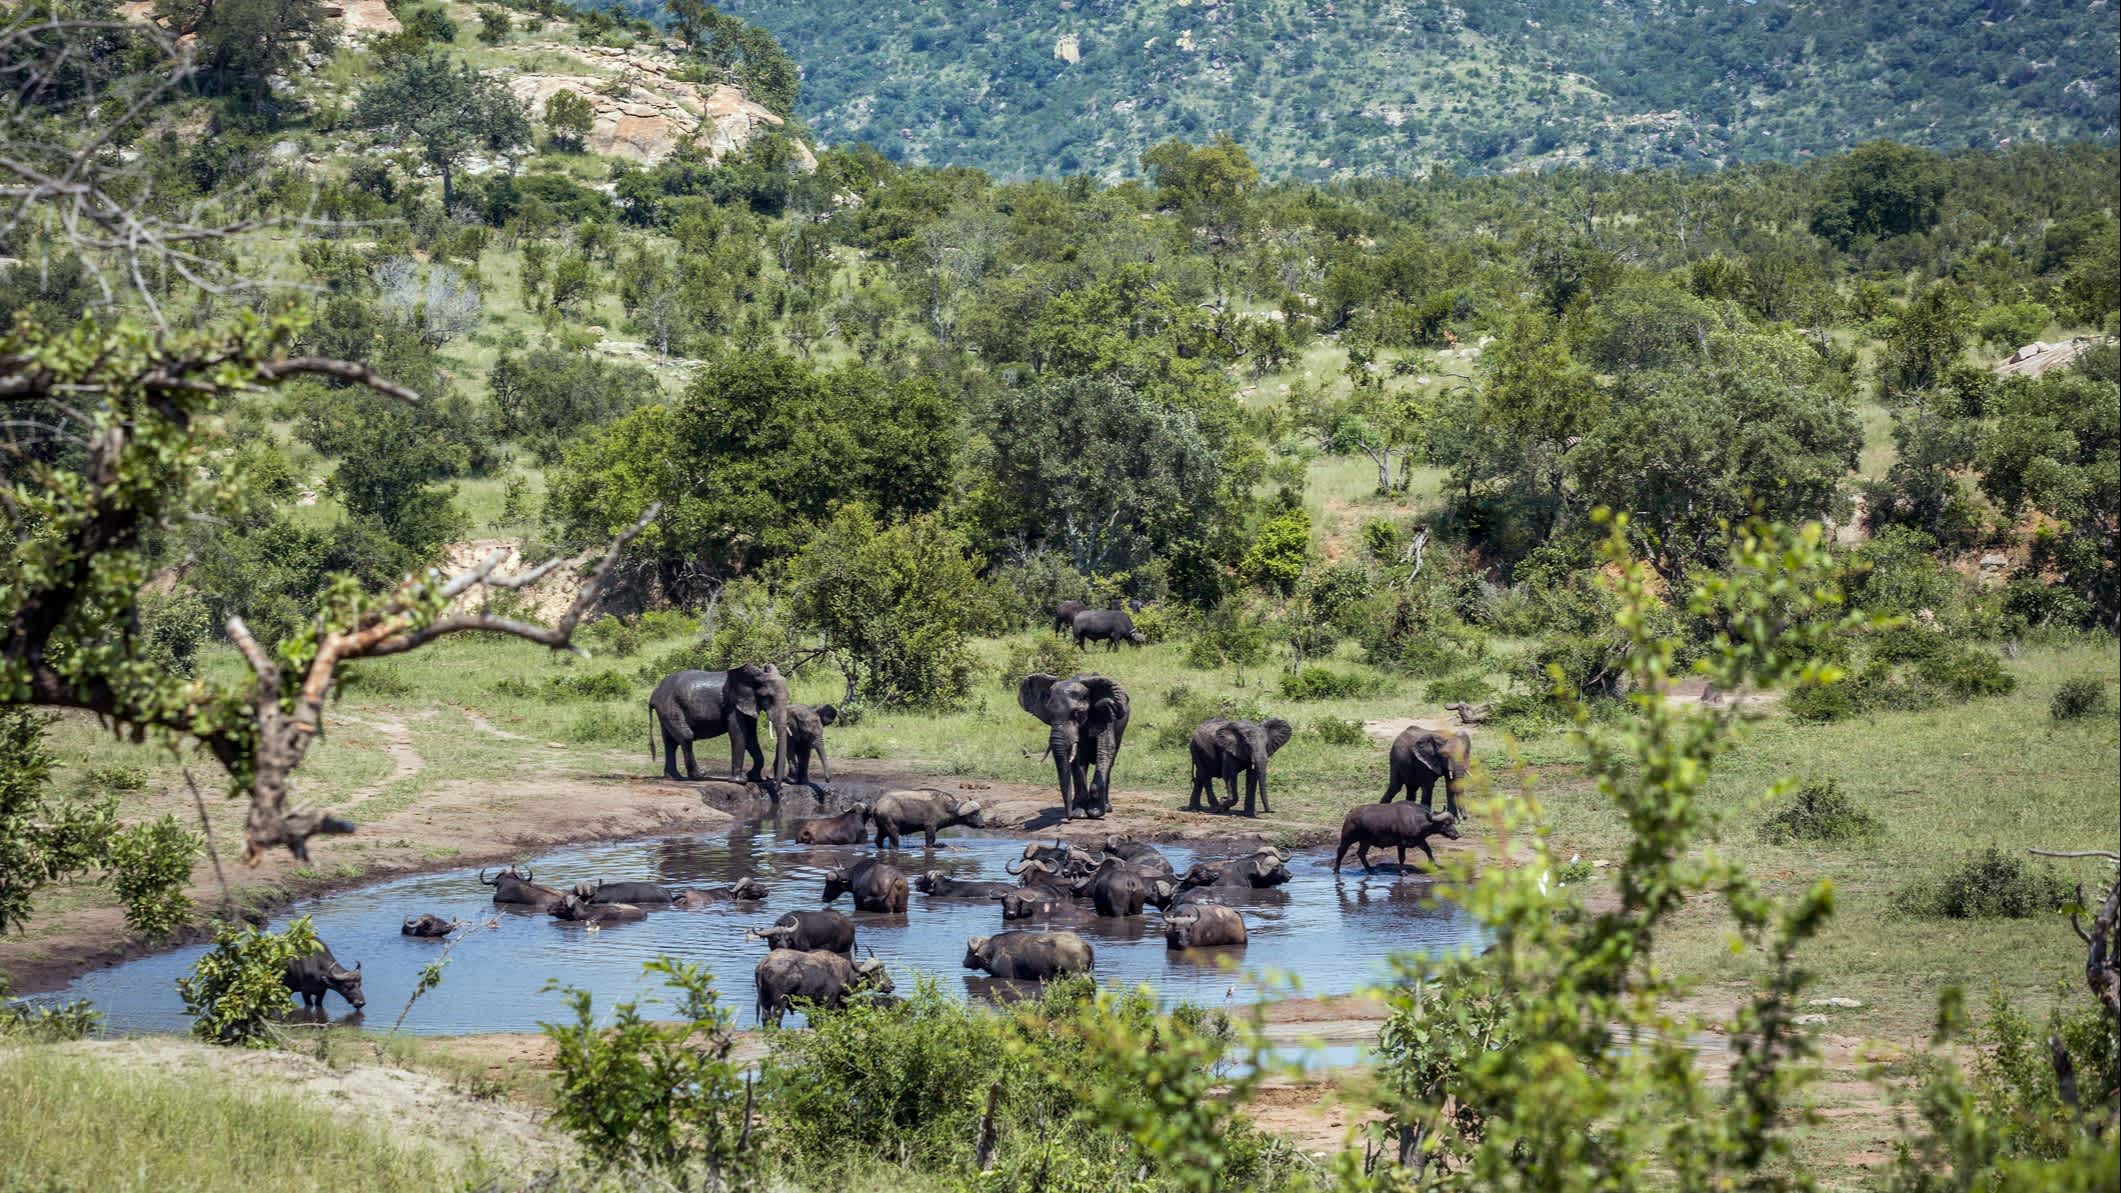 Eléphants au bord d'un étang dans le parc national Kruger, Afrique du Sud

